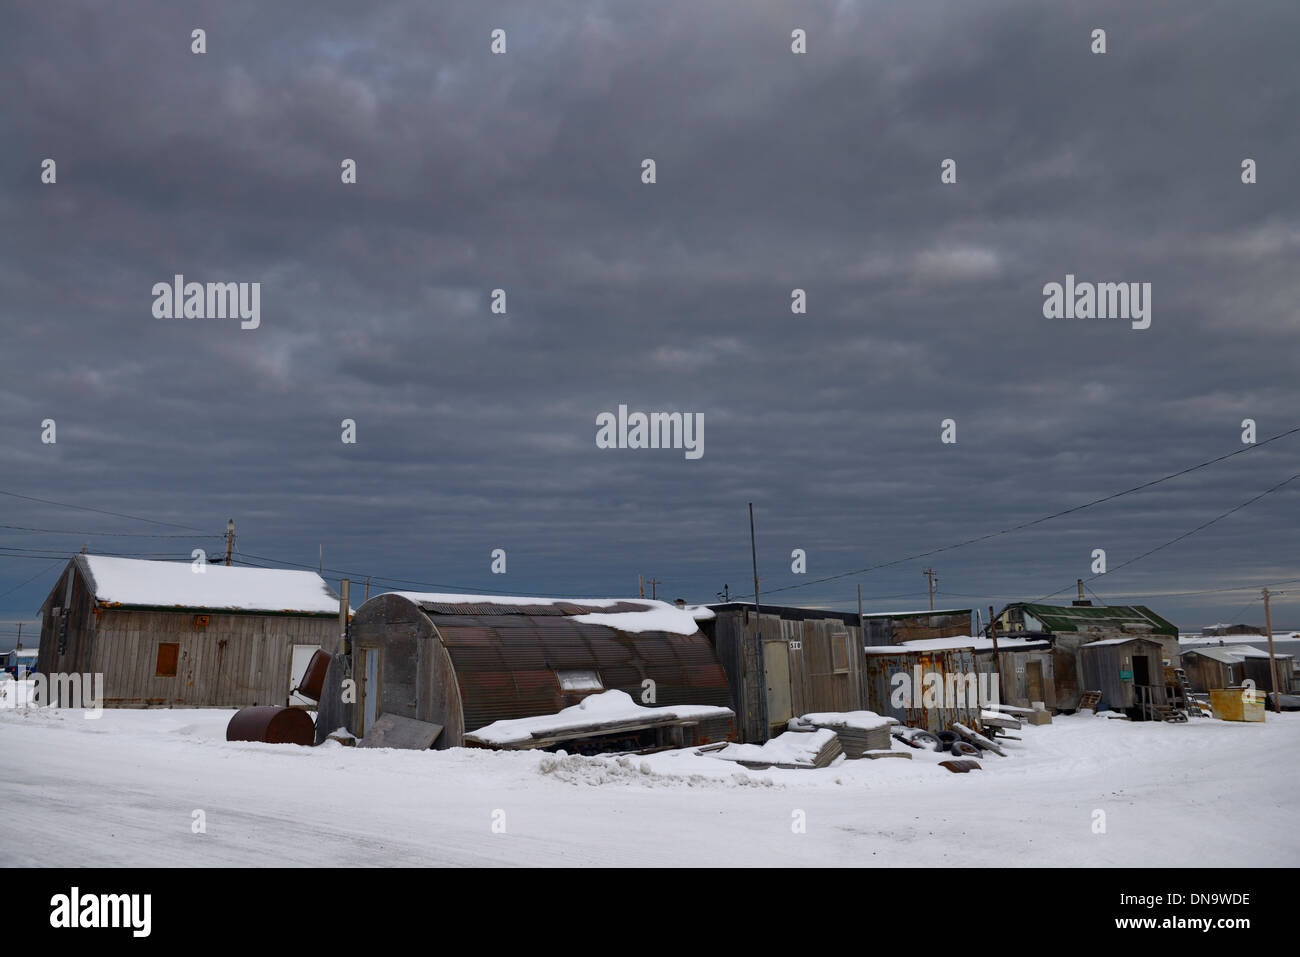 Nuvole scure su magazzini e case in eschimese inupiat villaggio di kaktovik alaska sulla beaufort sea Foto Stock